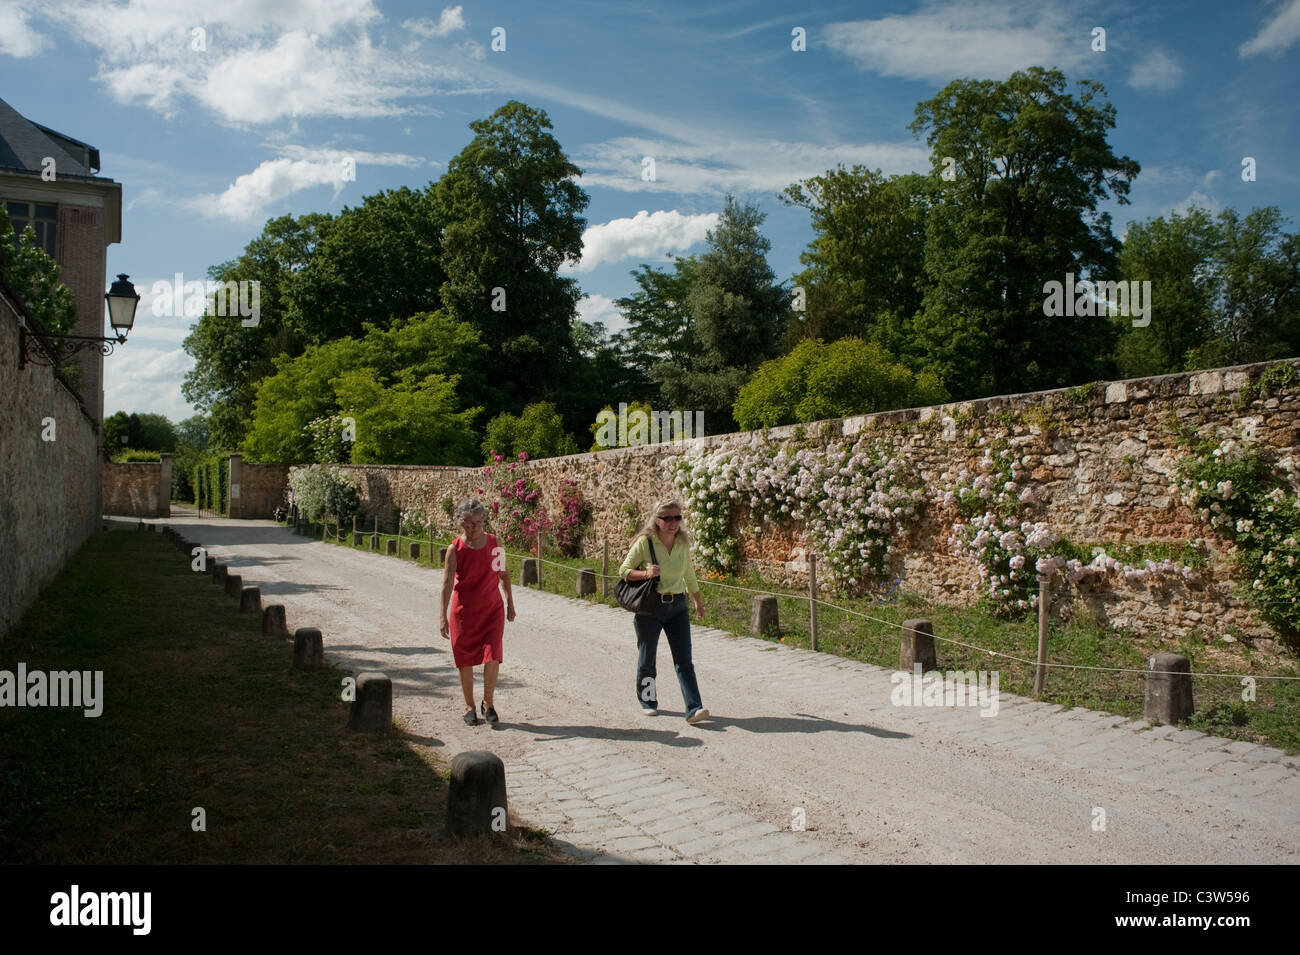 Versailles, France, scènes de parc urbain, 'Parc Balbi', deux femmes marchant, Jardins de Versailles Banque D'Images